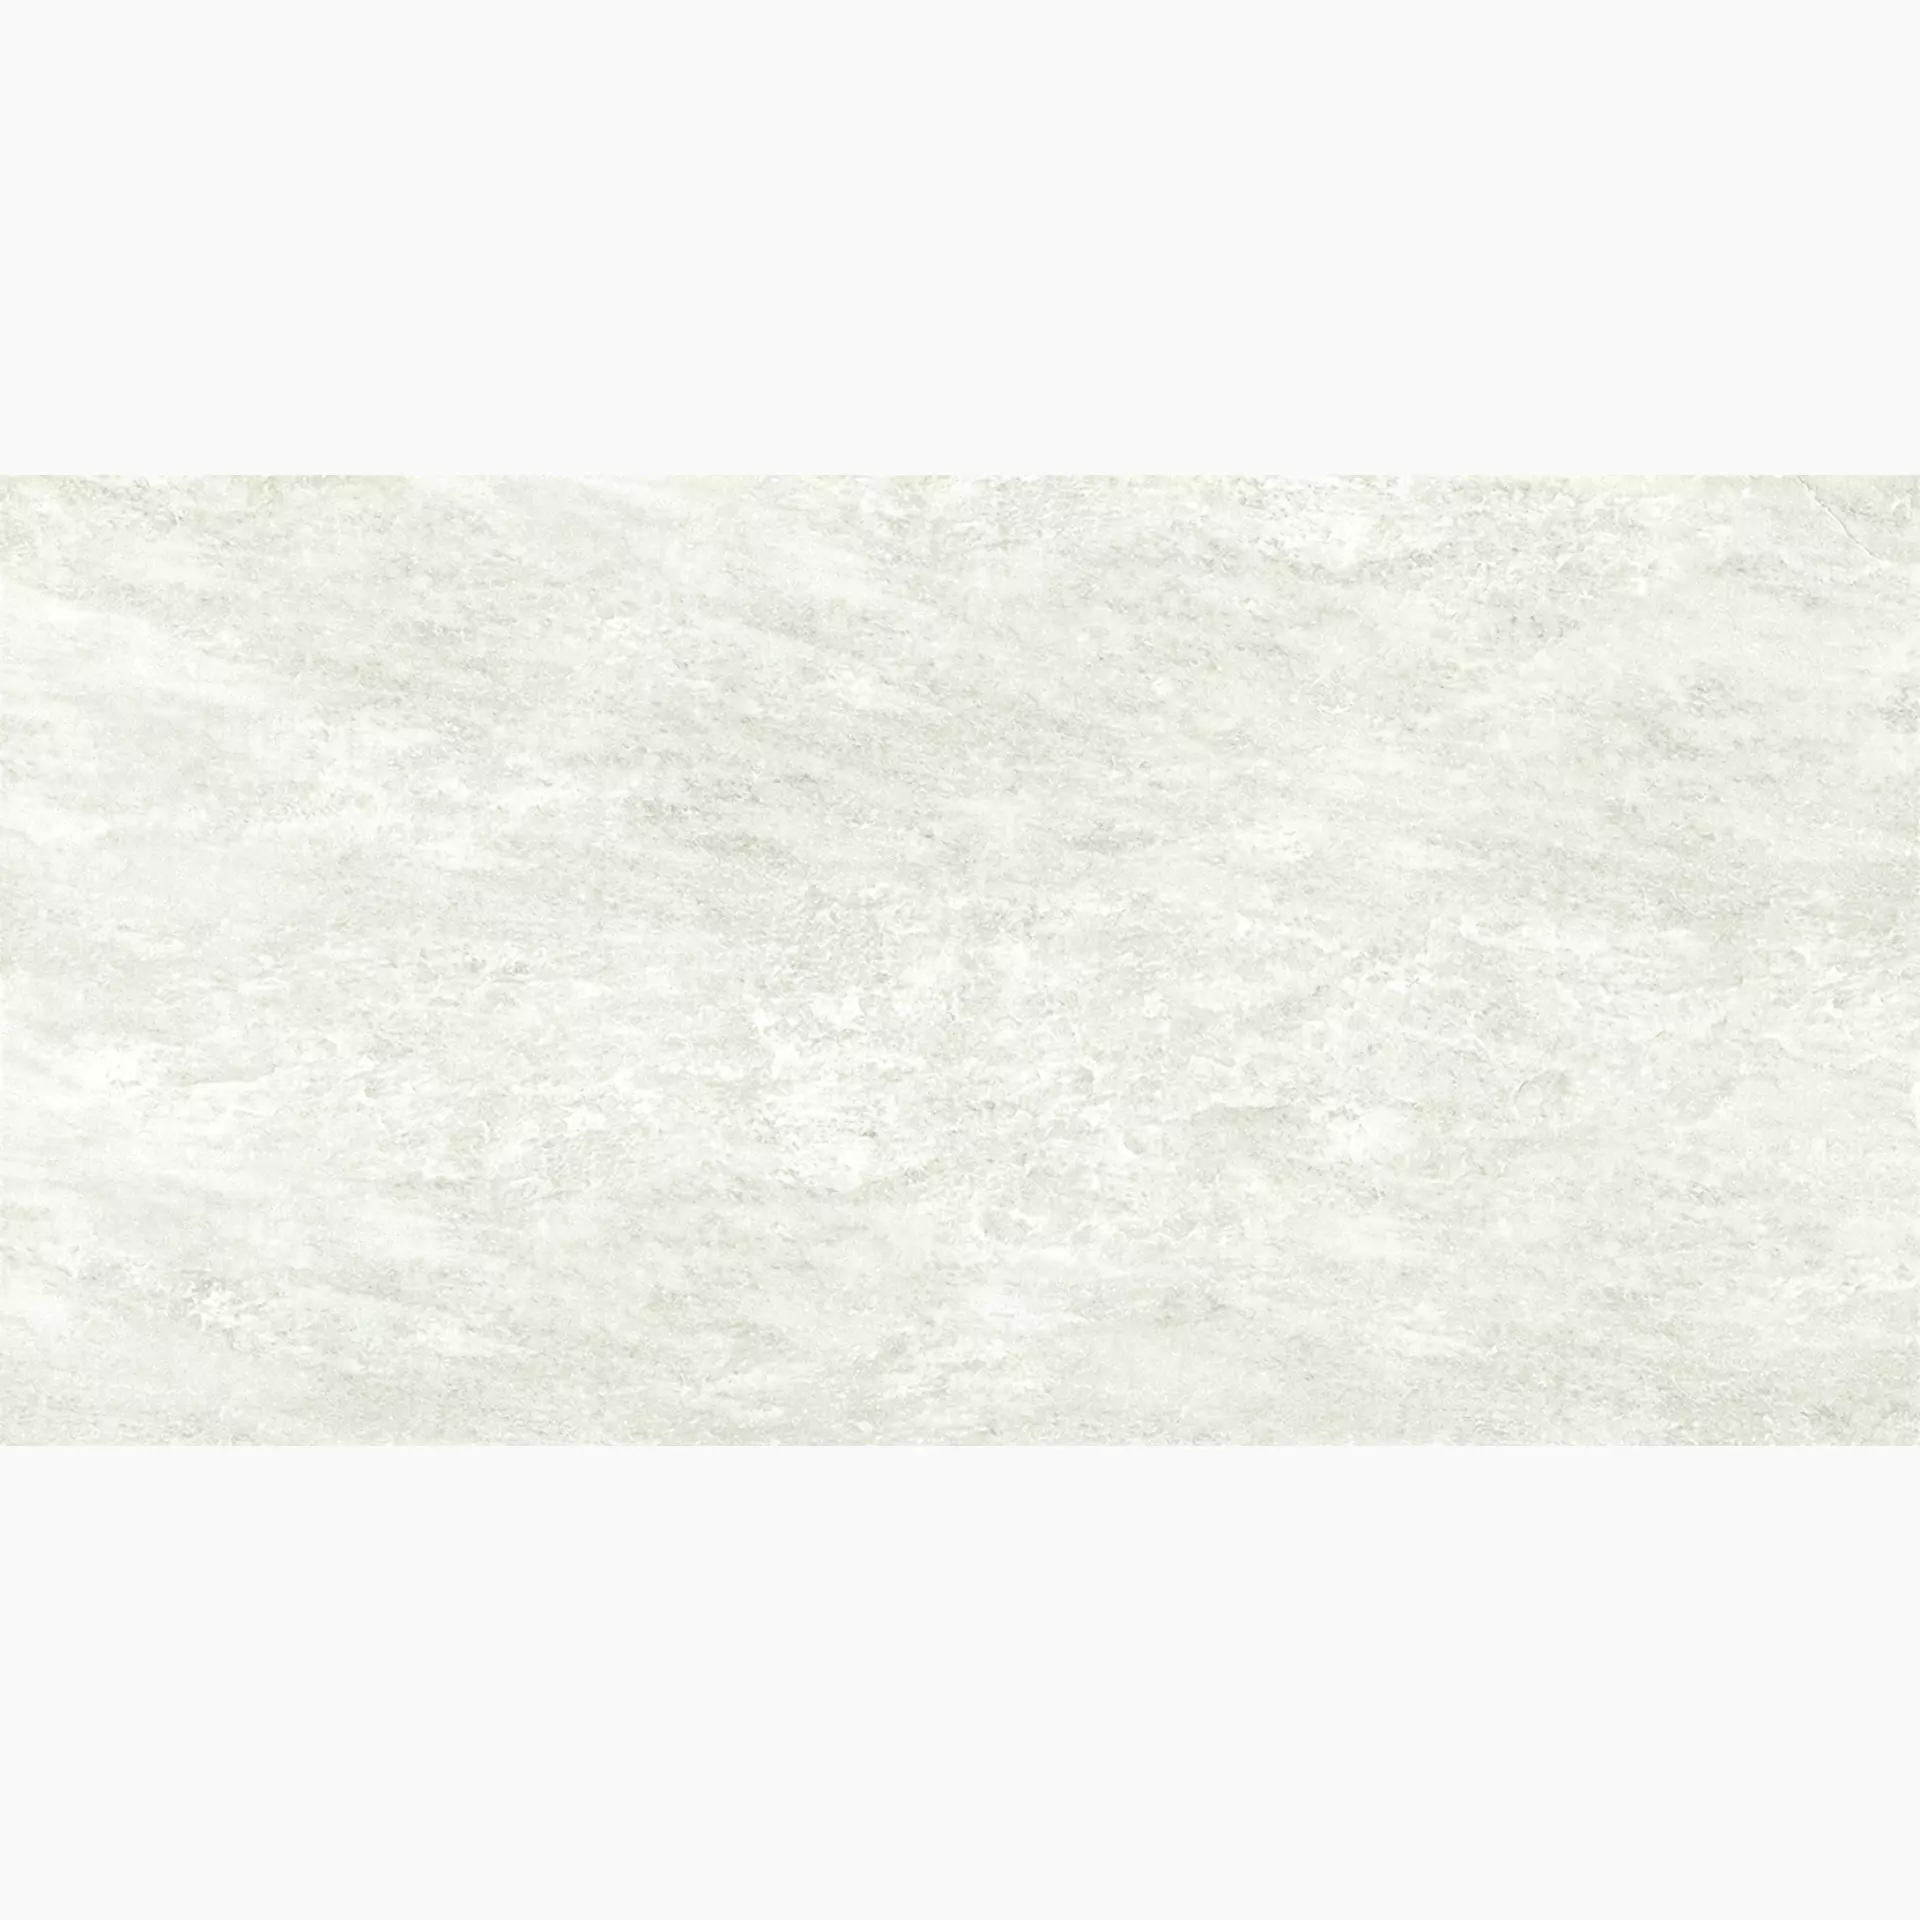 Ergon Oros Stone White Naturale EKL1 60x120cm rectified 9,5mm